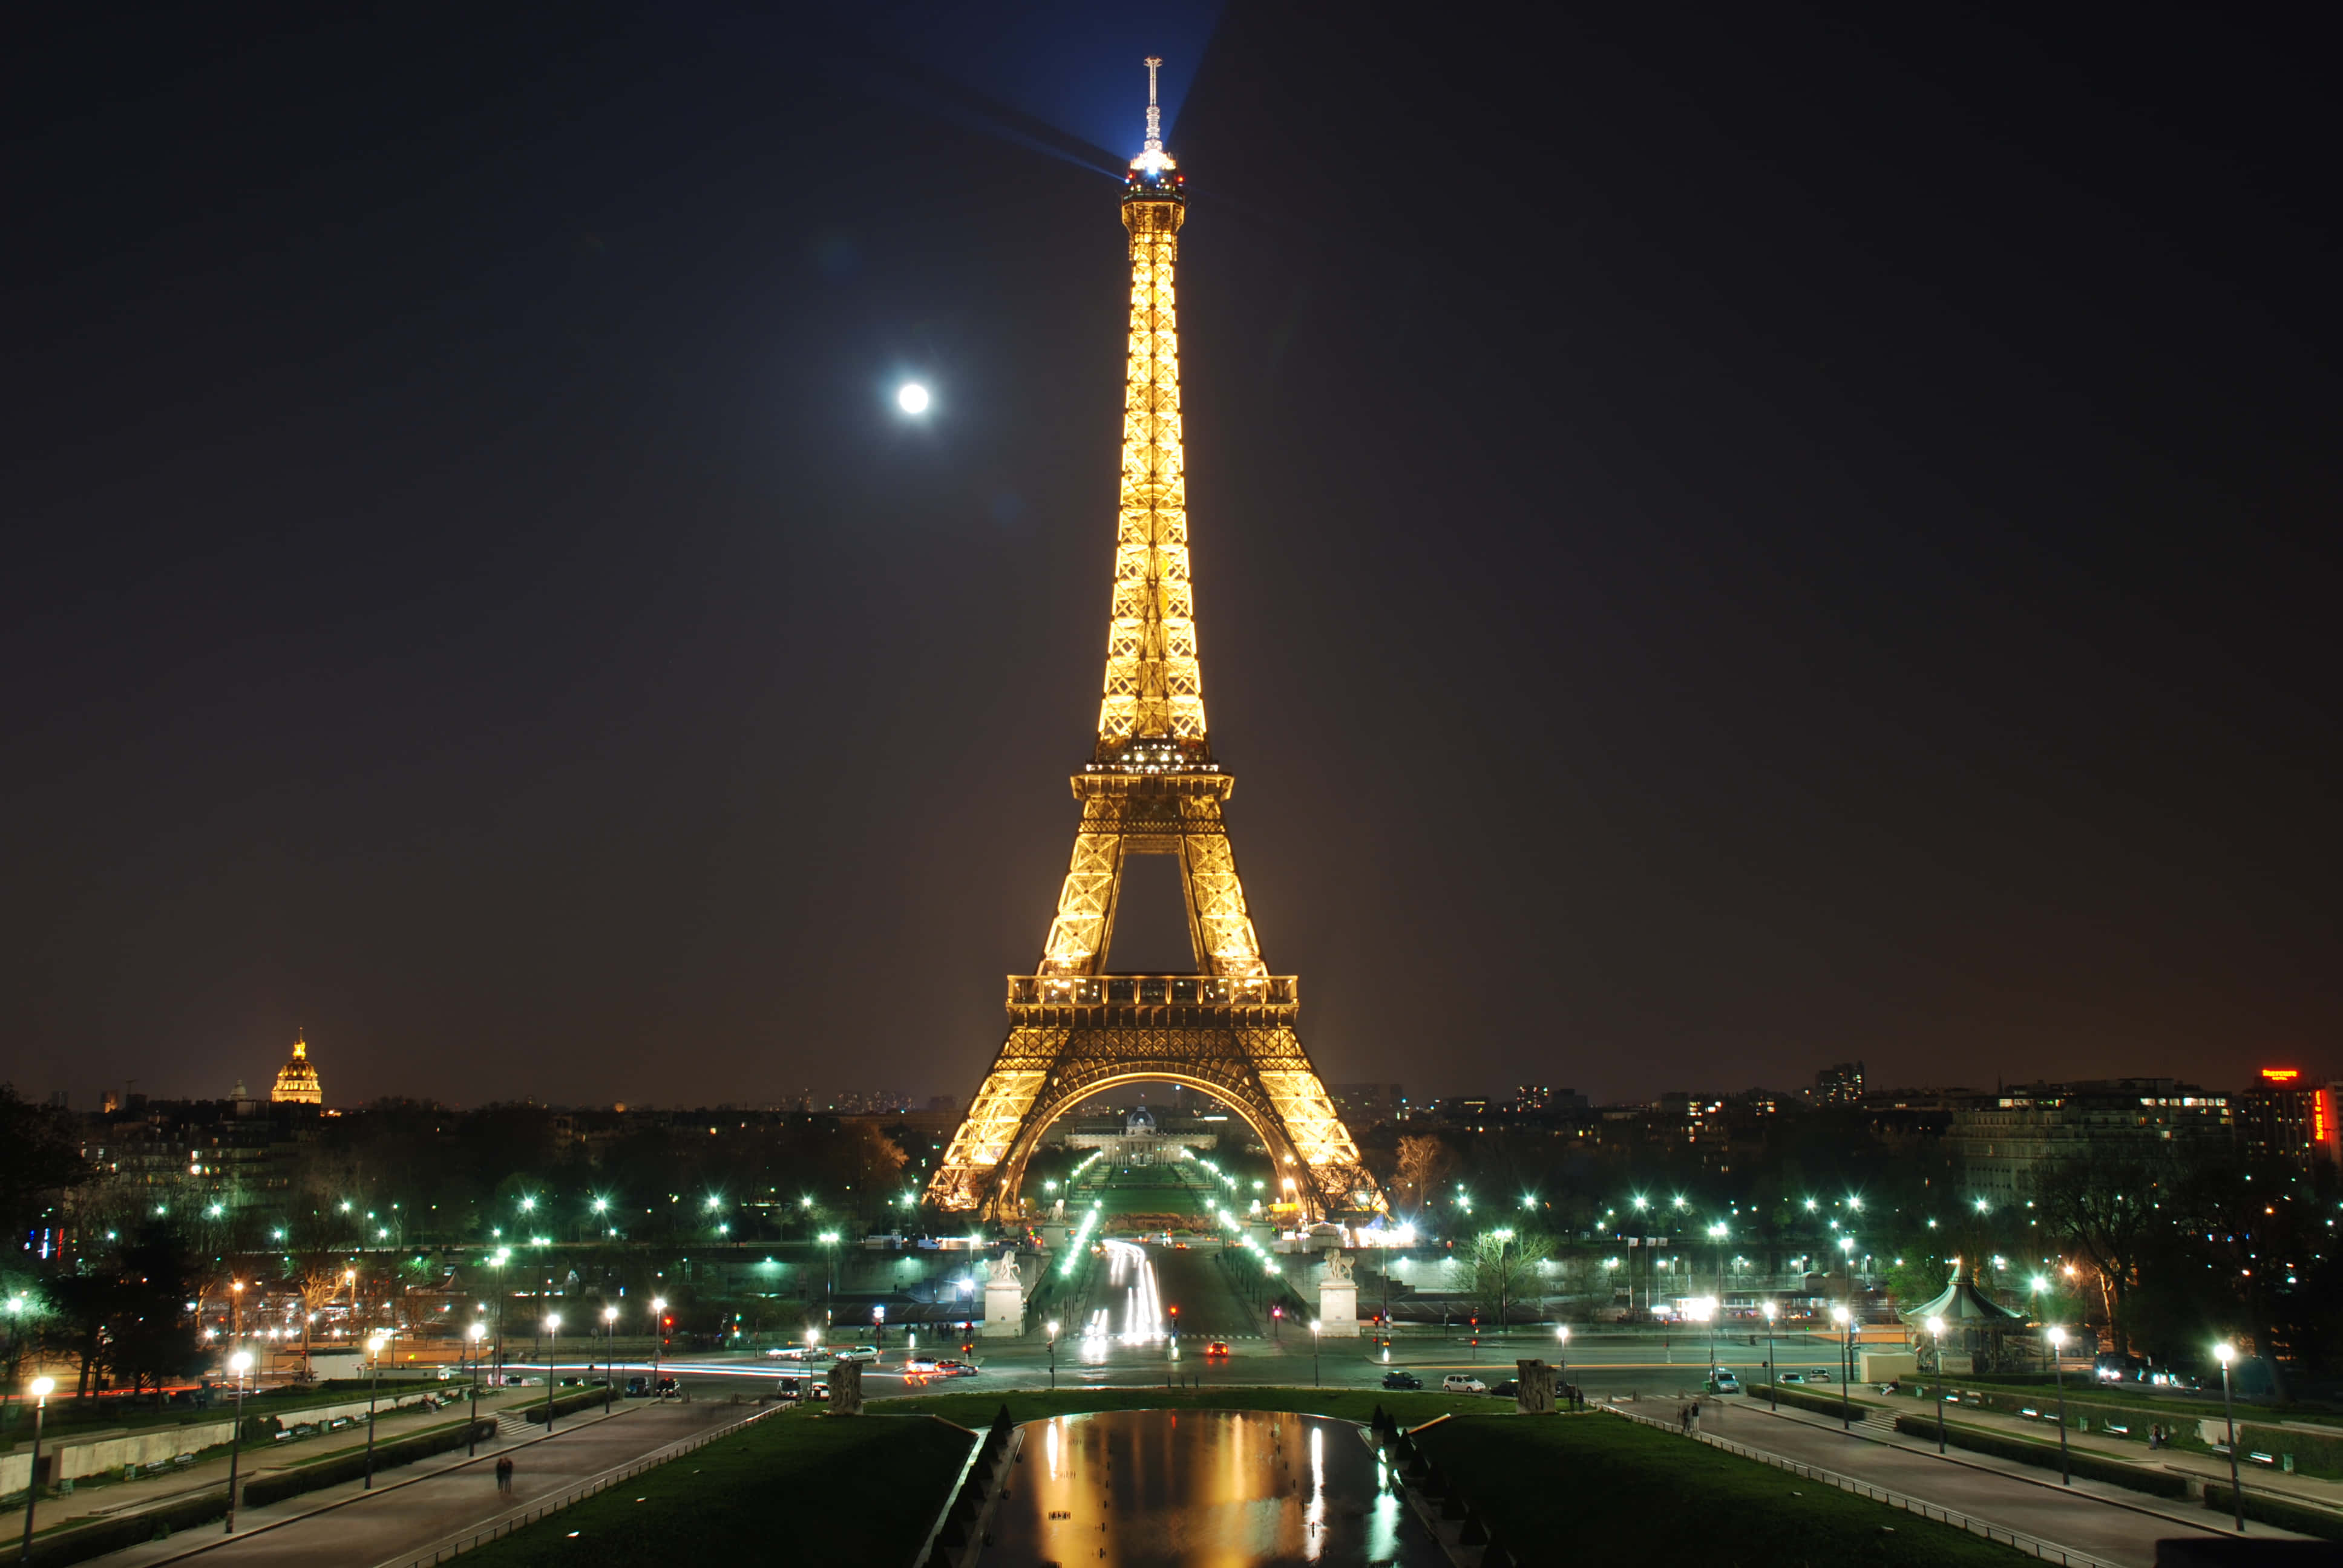 Unanoche De Romance Y Destellos Desde La Magnífica Torre Eiffel.